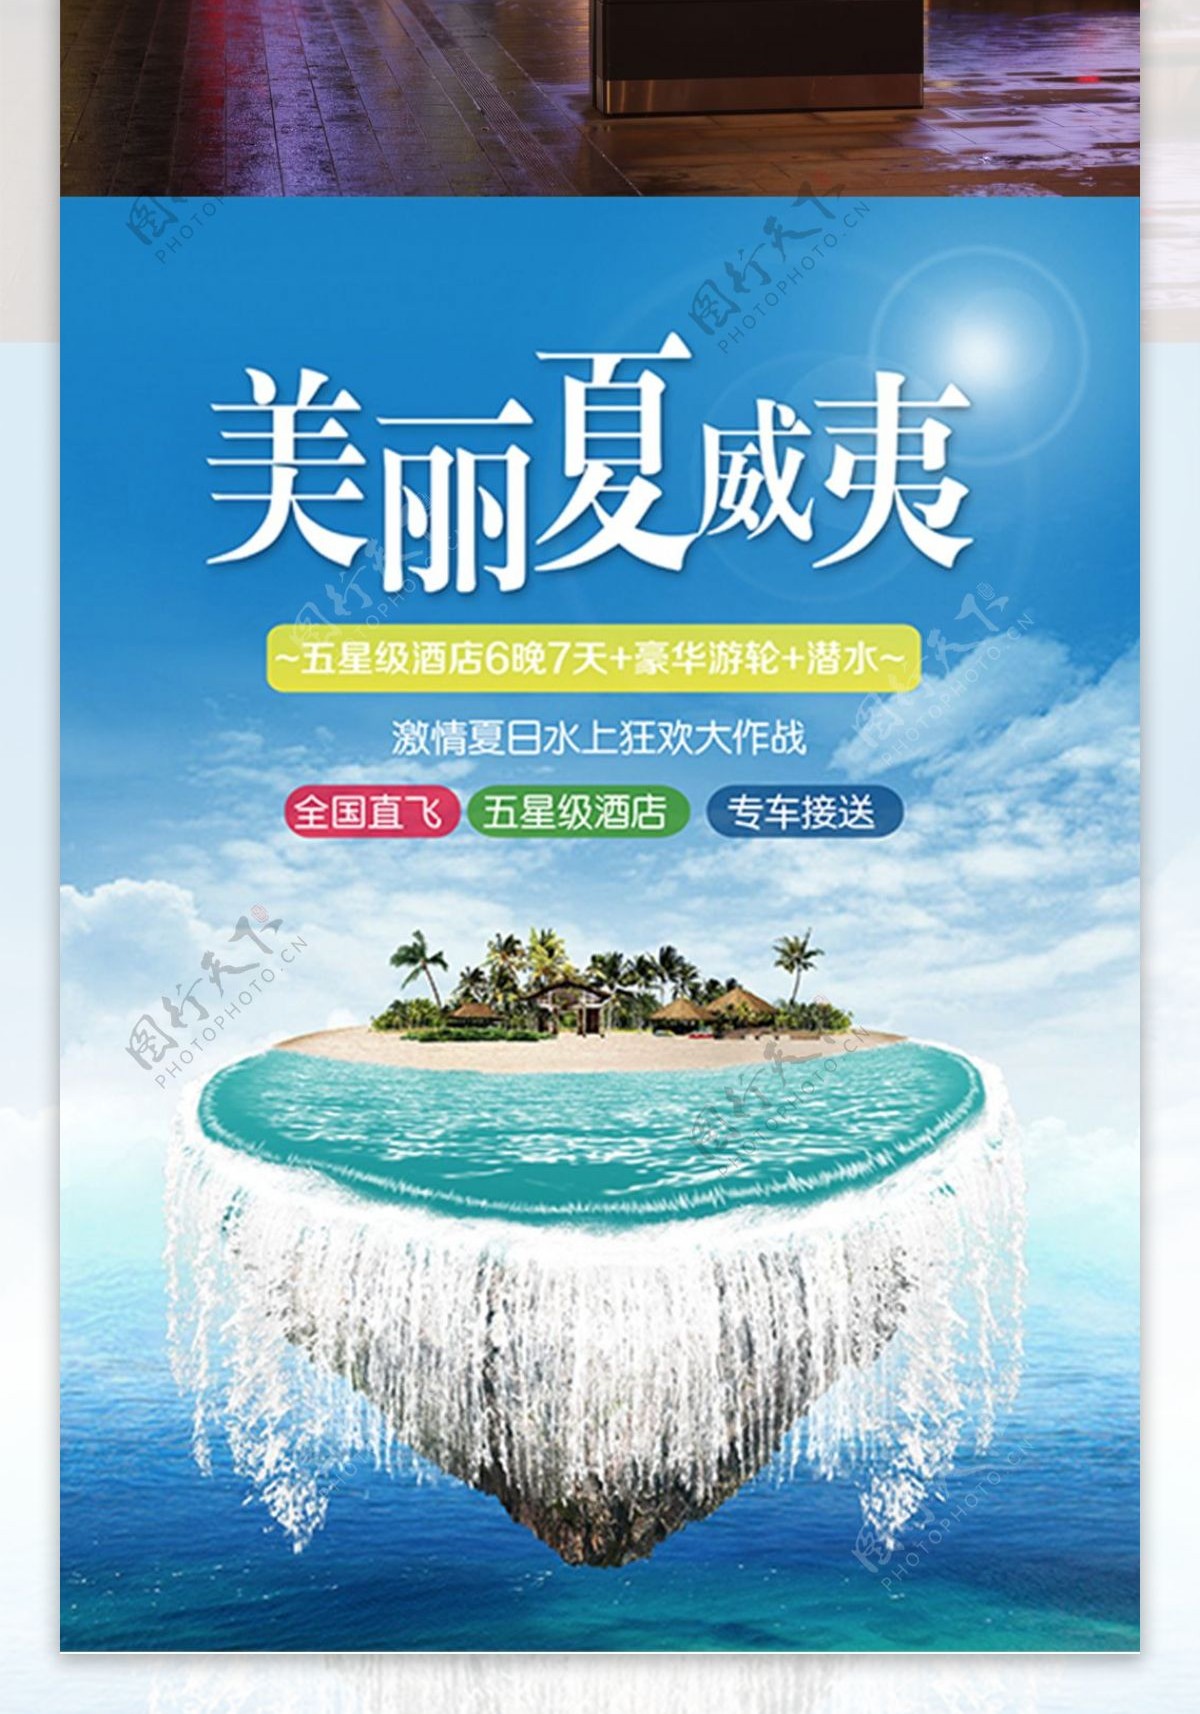 夏季夏威夷旅游跟团优惠假日水上狂欢海报